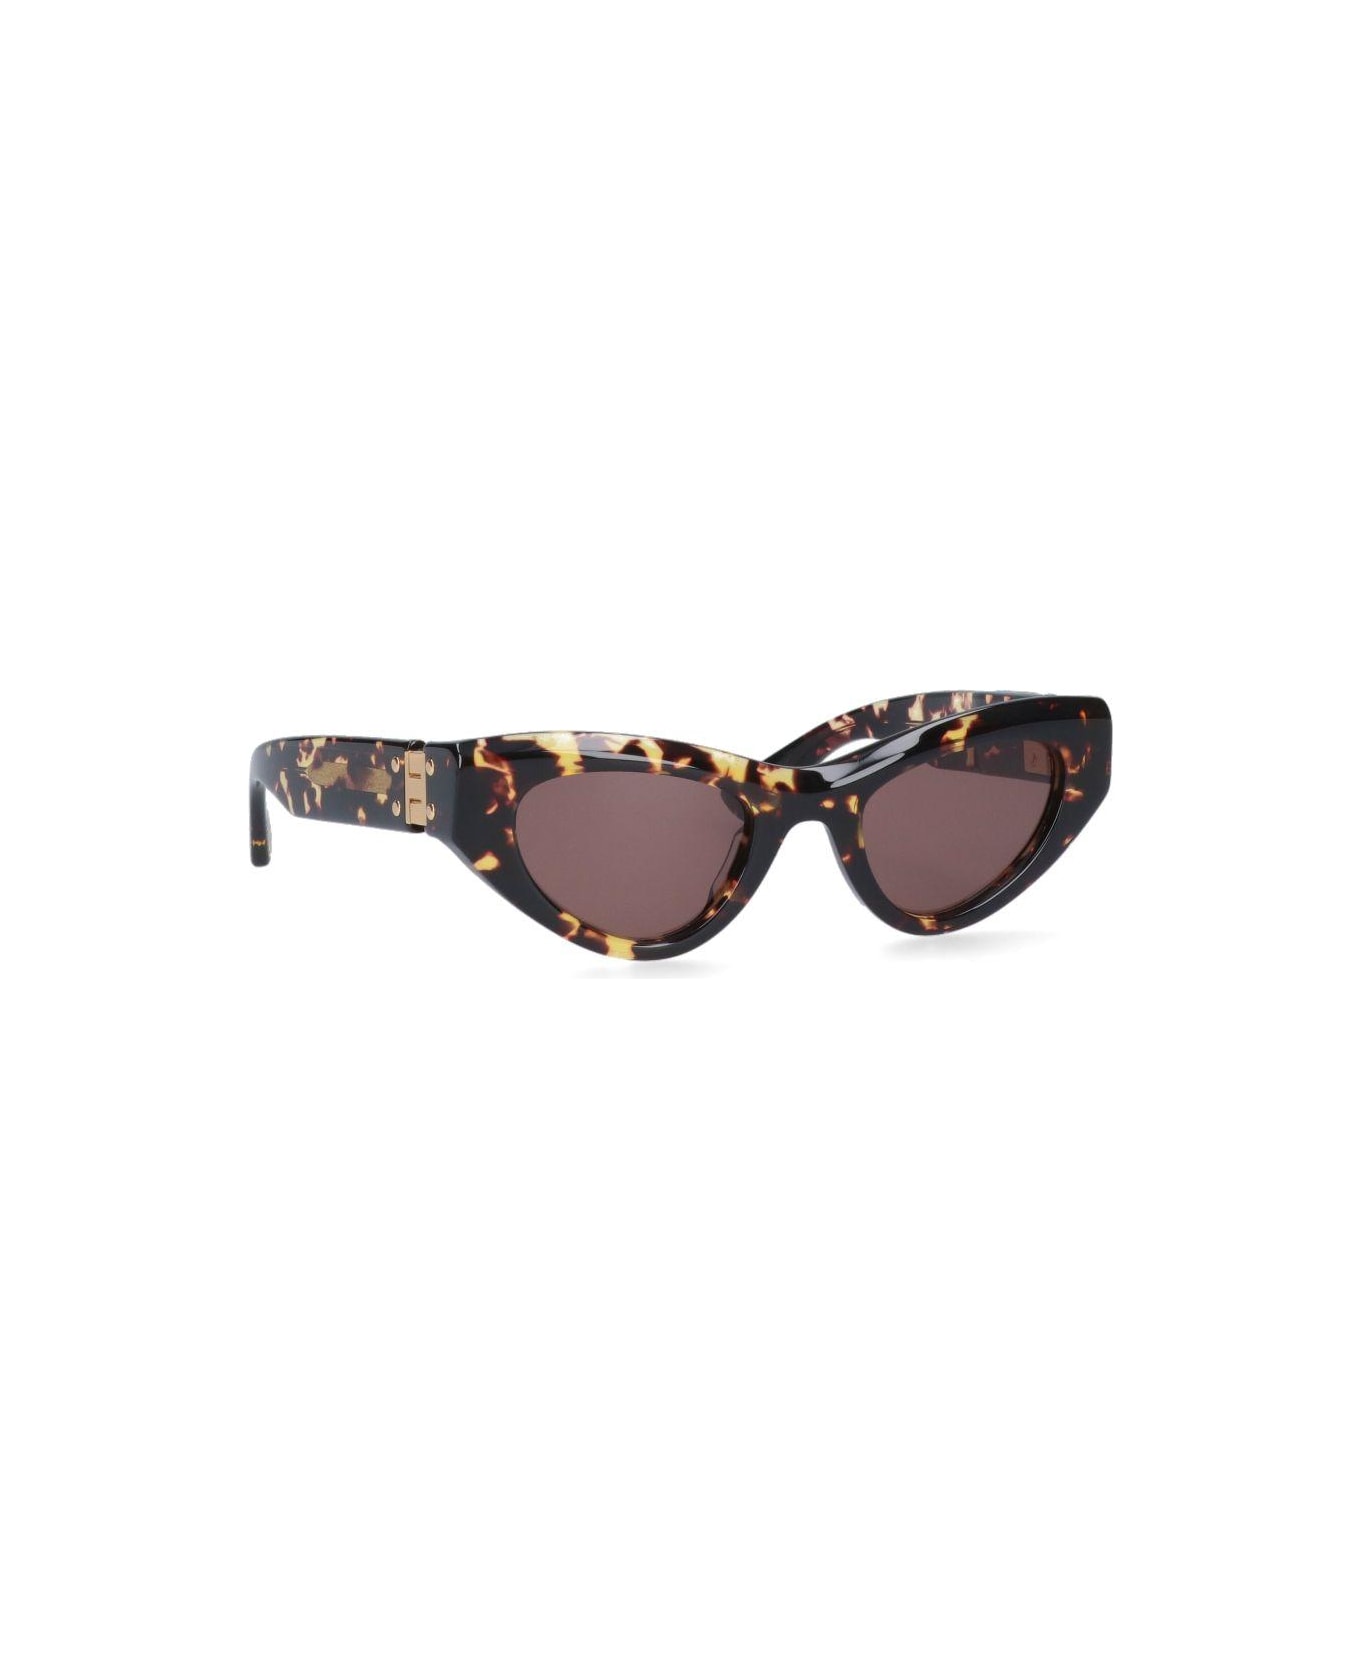 Bottega Veneta 'angle' sunglasses